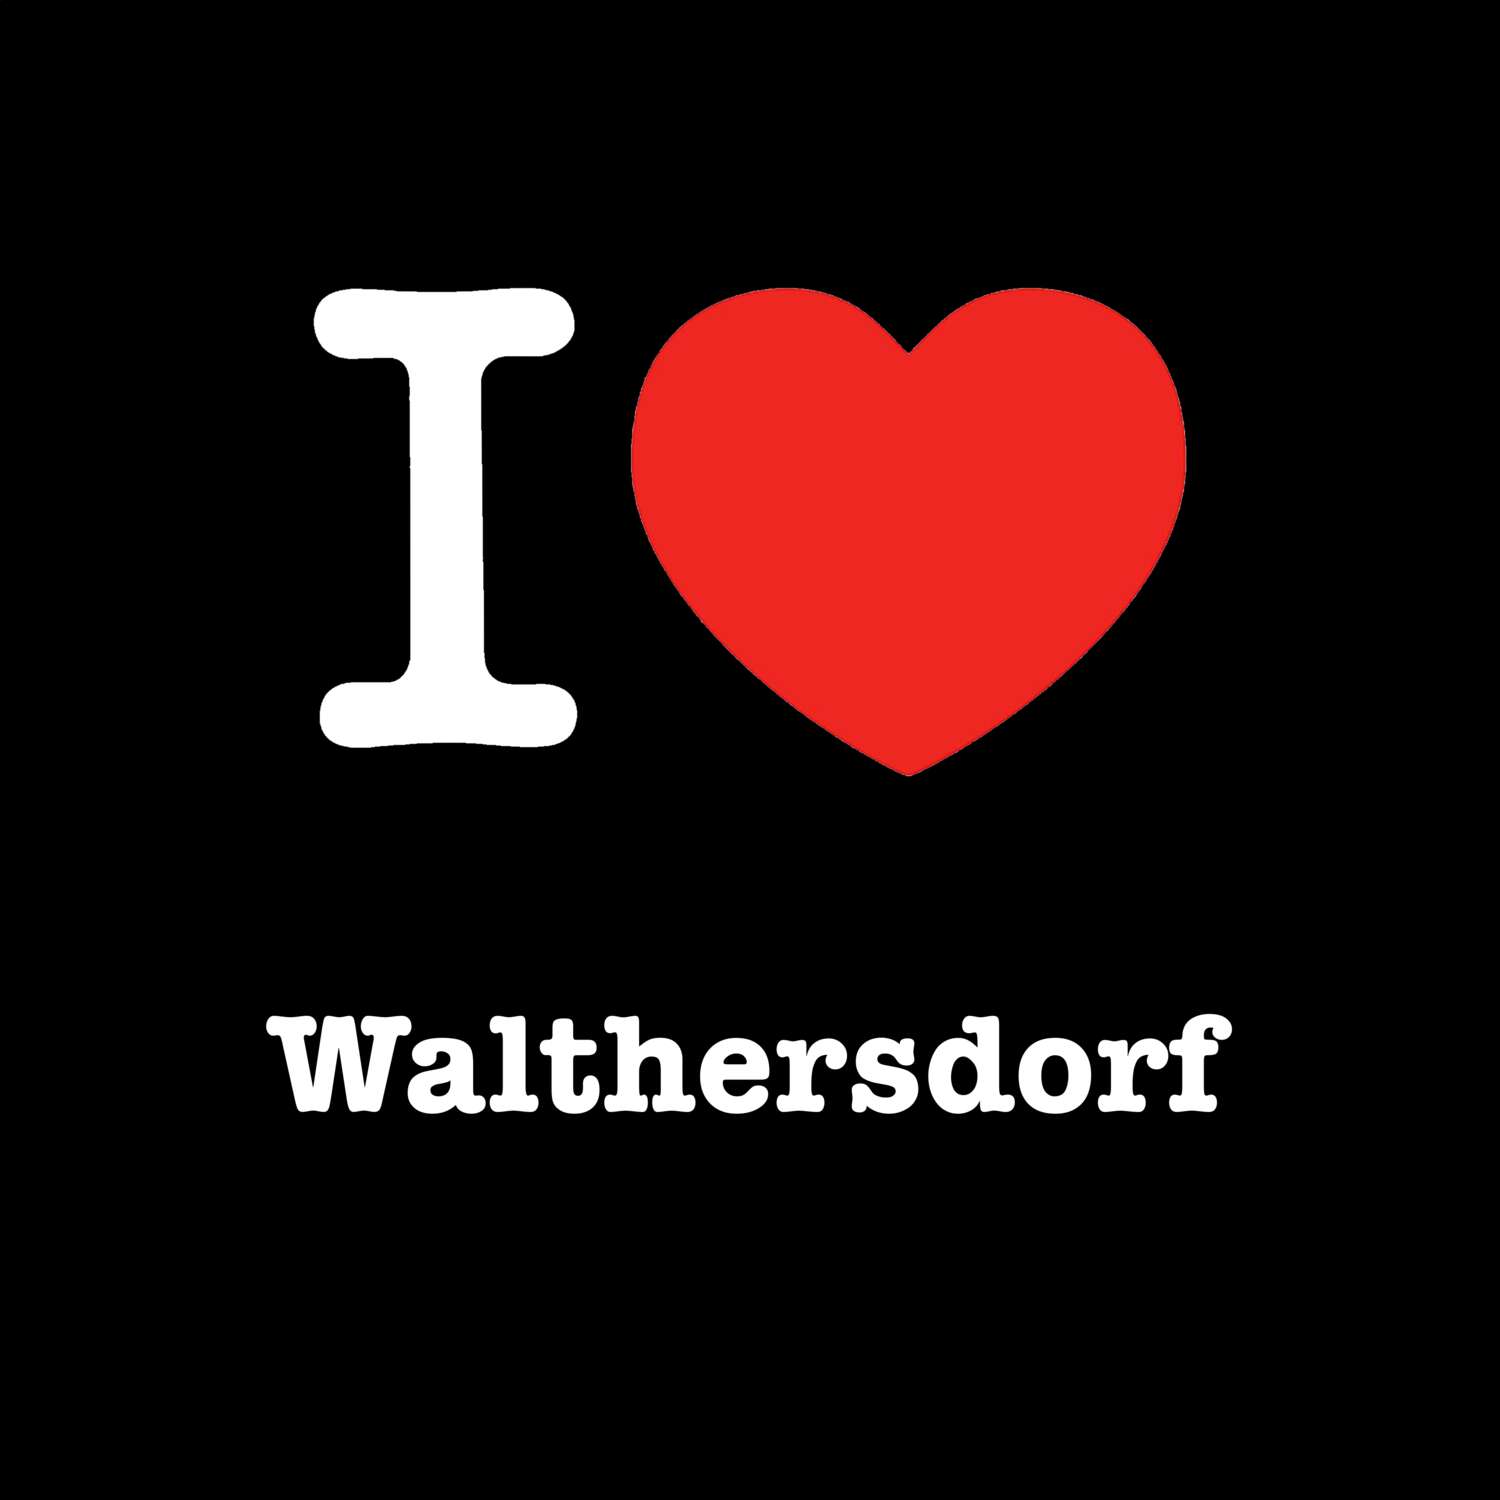 Walthersdorf T-Shirt »I love«